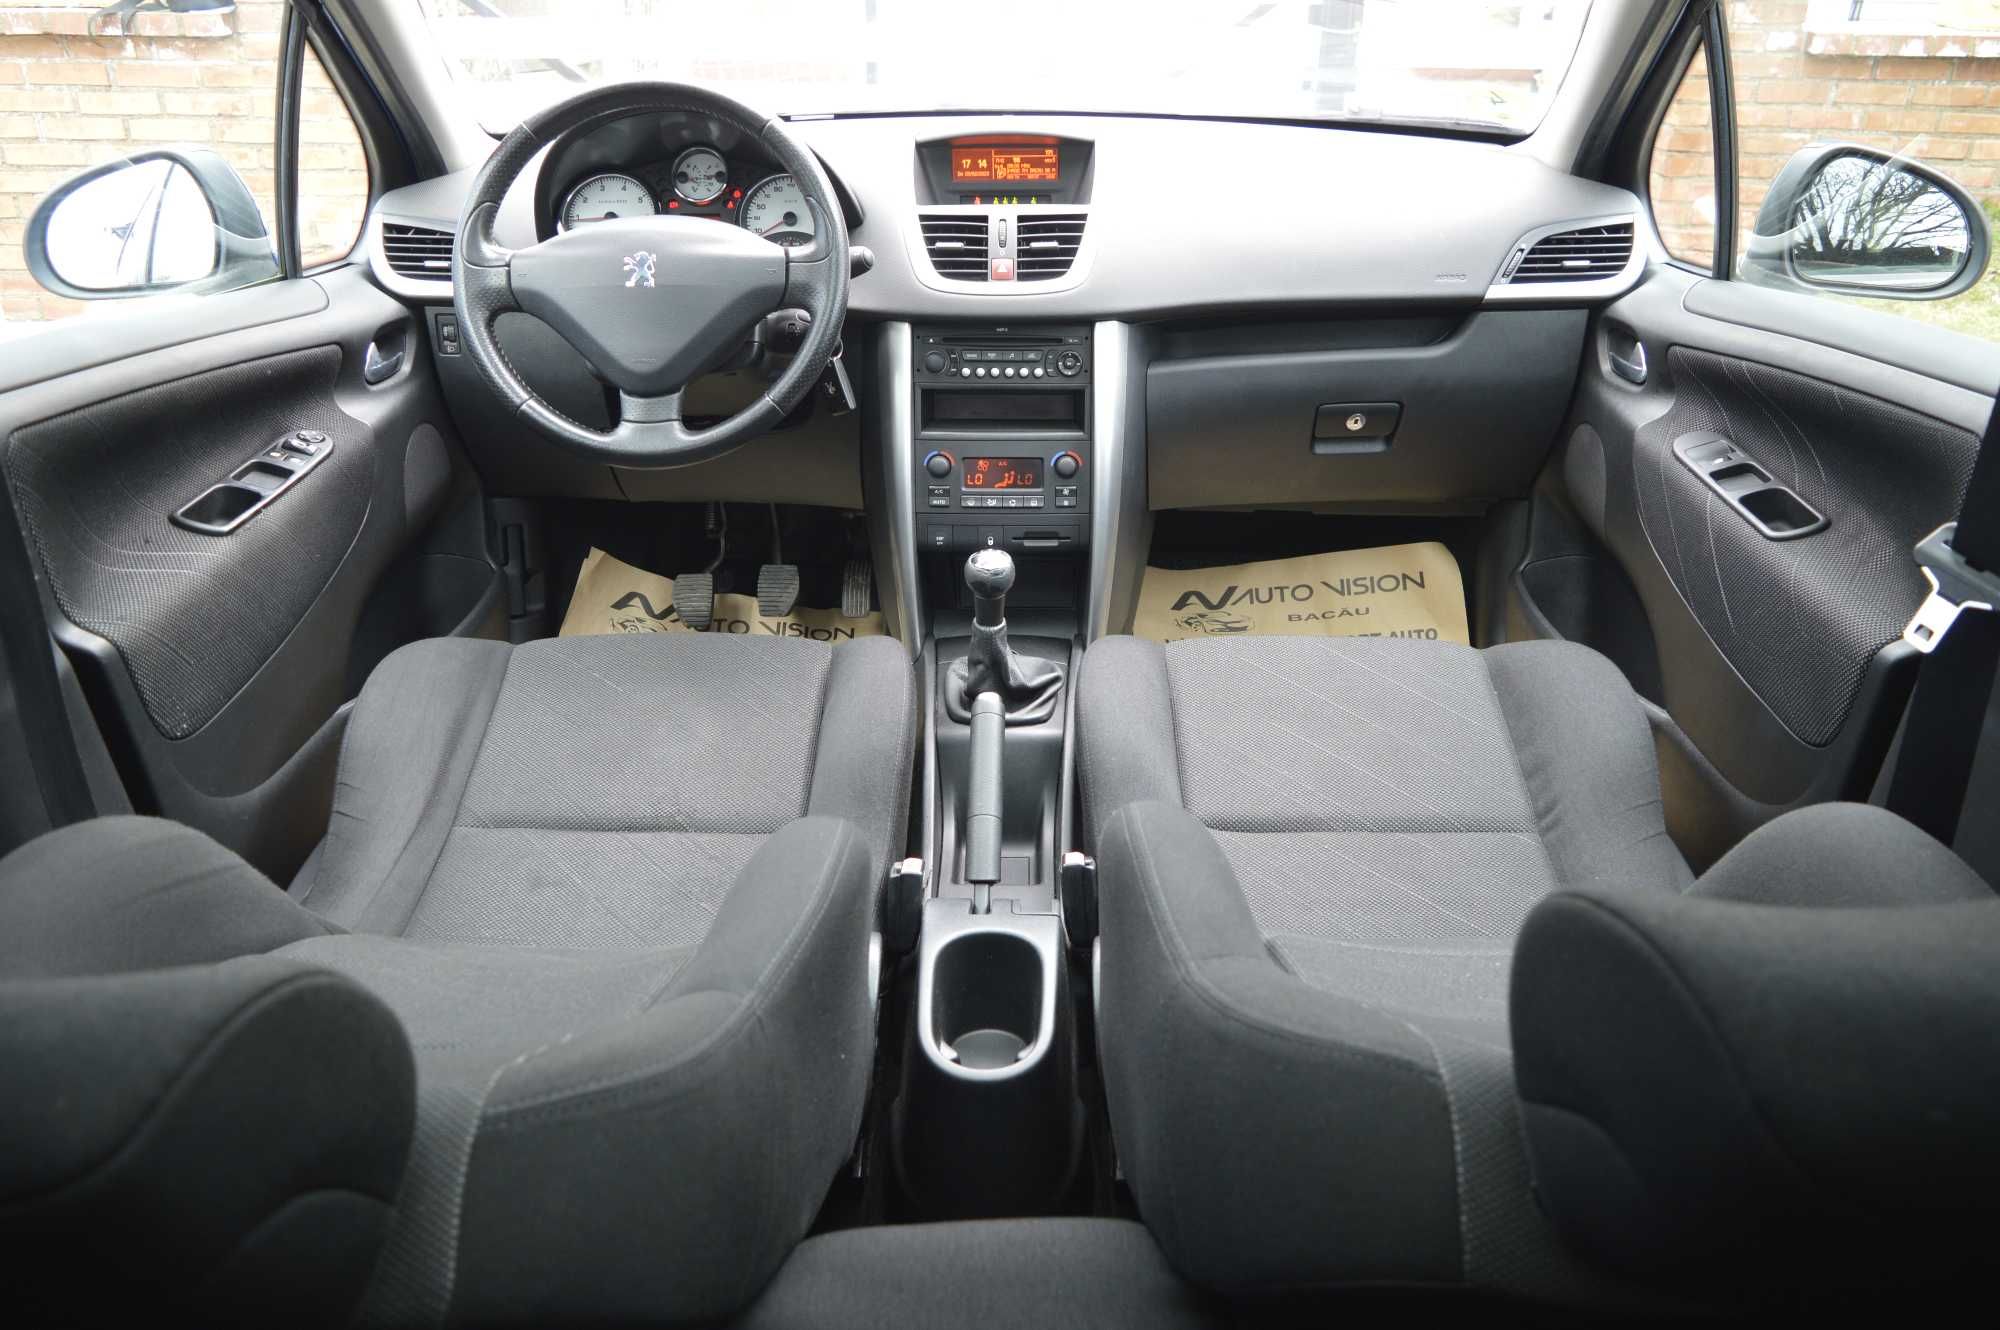 *RATE*Peugeot 207 hatchback 1.6benzina E4 climatronic panorama 06/2007